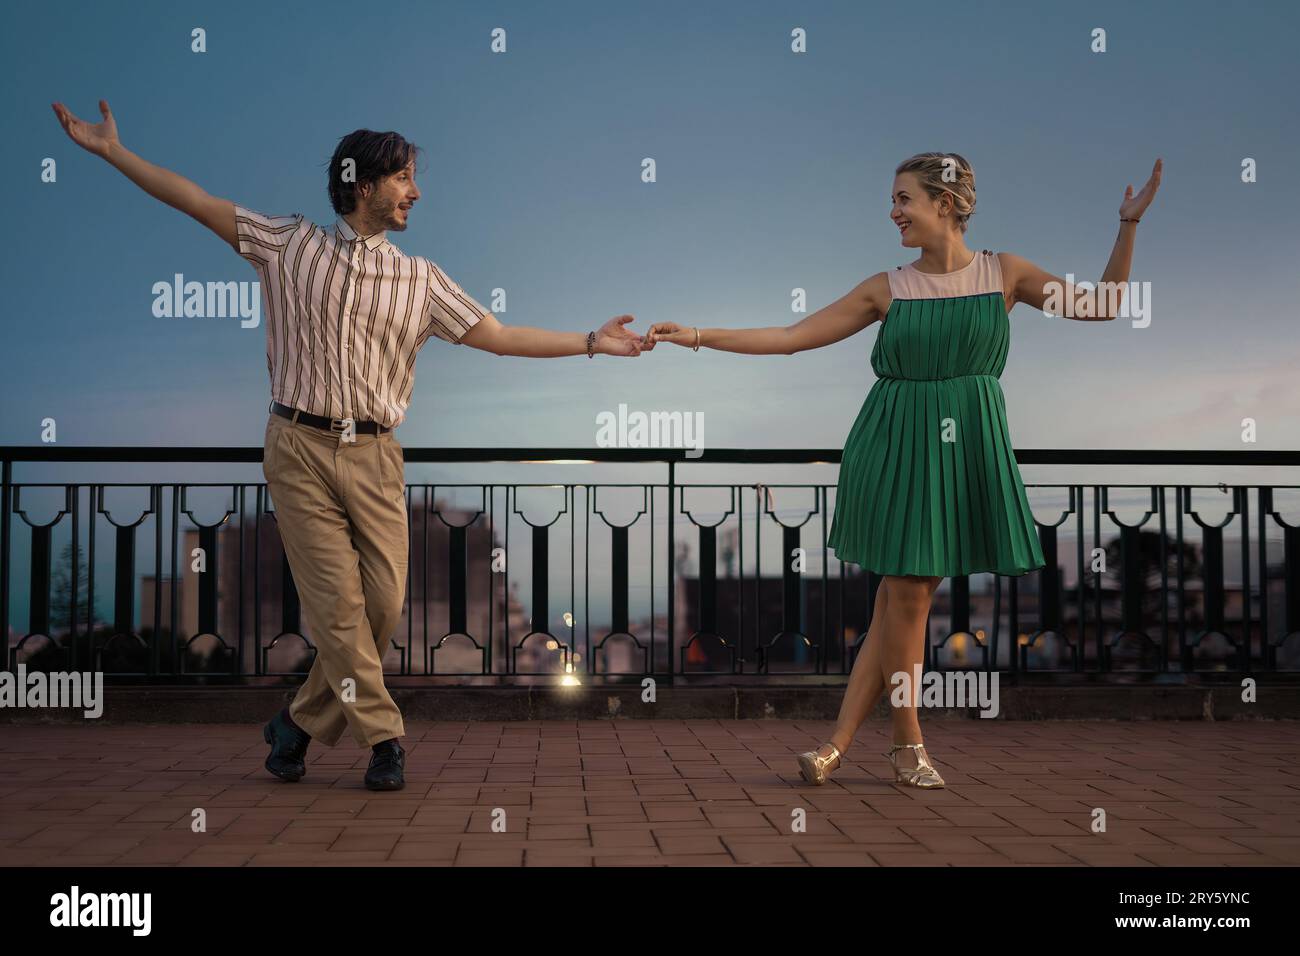 Die beiden schwingen auf einer Terrasse und tanzen im Profil, während sie die Hände halten. Die weitläufige Kulisse bietet viel Platz für Text. Stockfoto